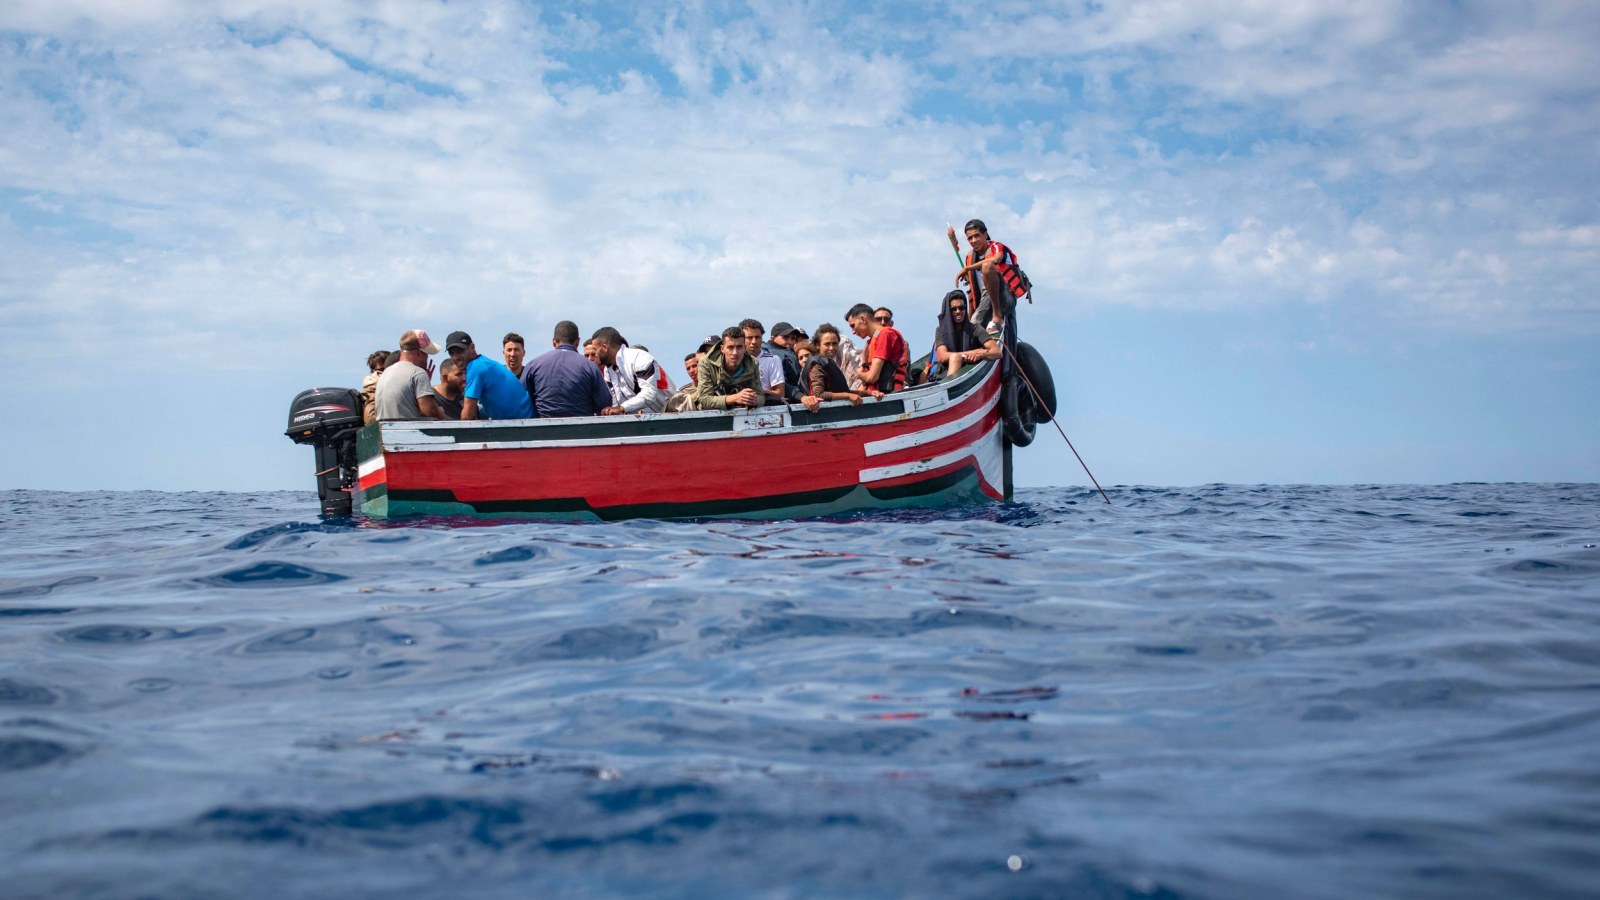 Λέσβος: Απόβαση 136 αλλοδαπών με 5 πλωτά  – Έφτασαν  χωρίς κανένα πρόβλημα